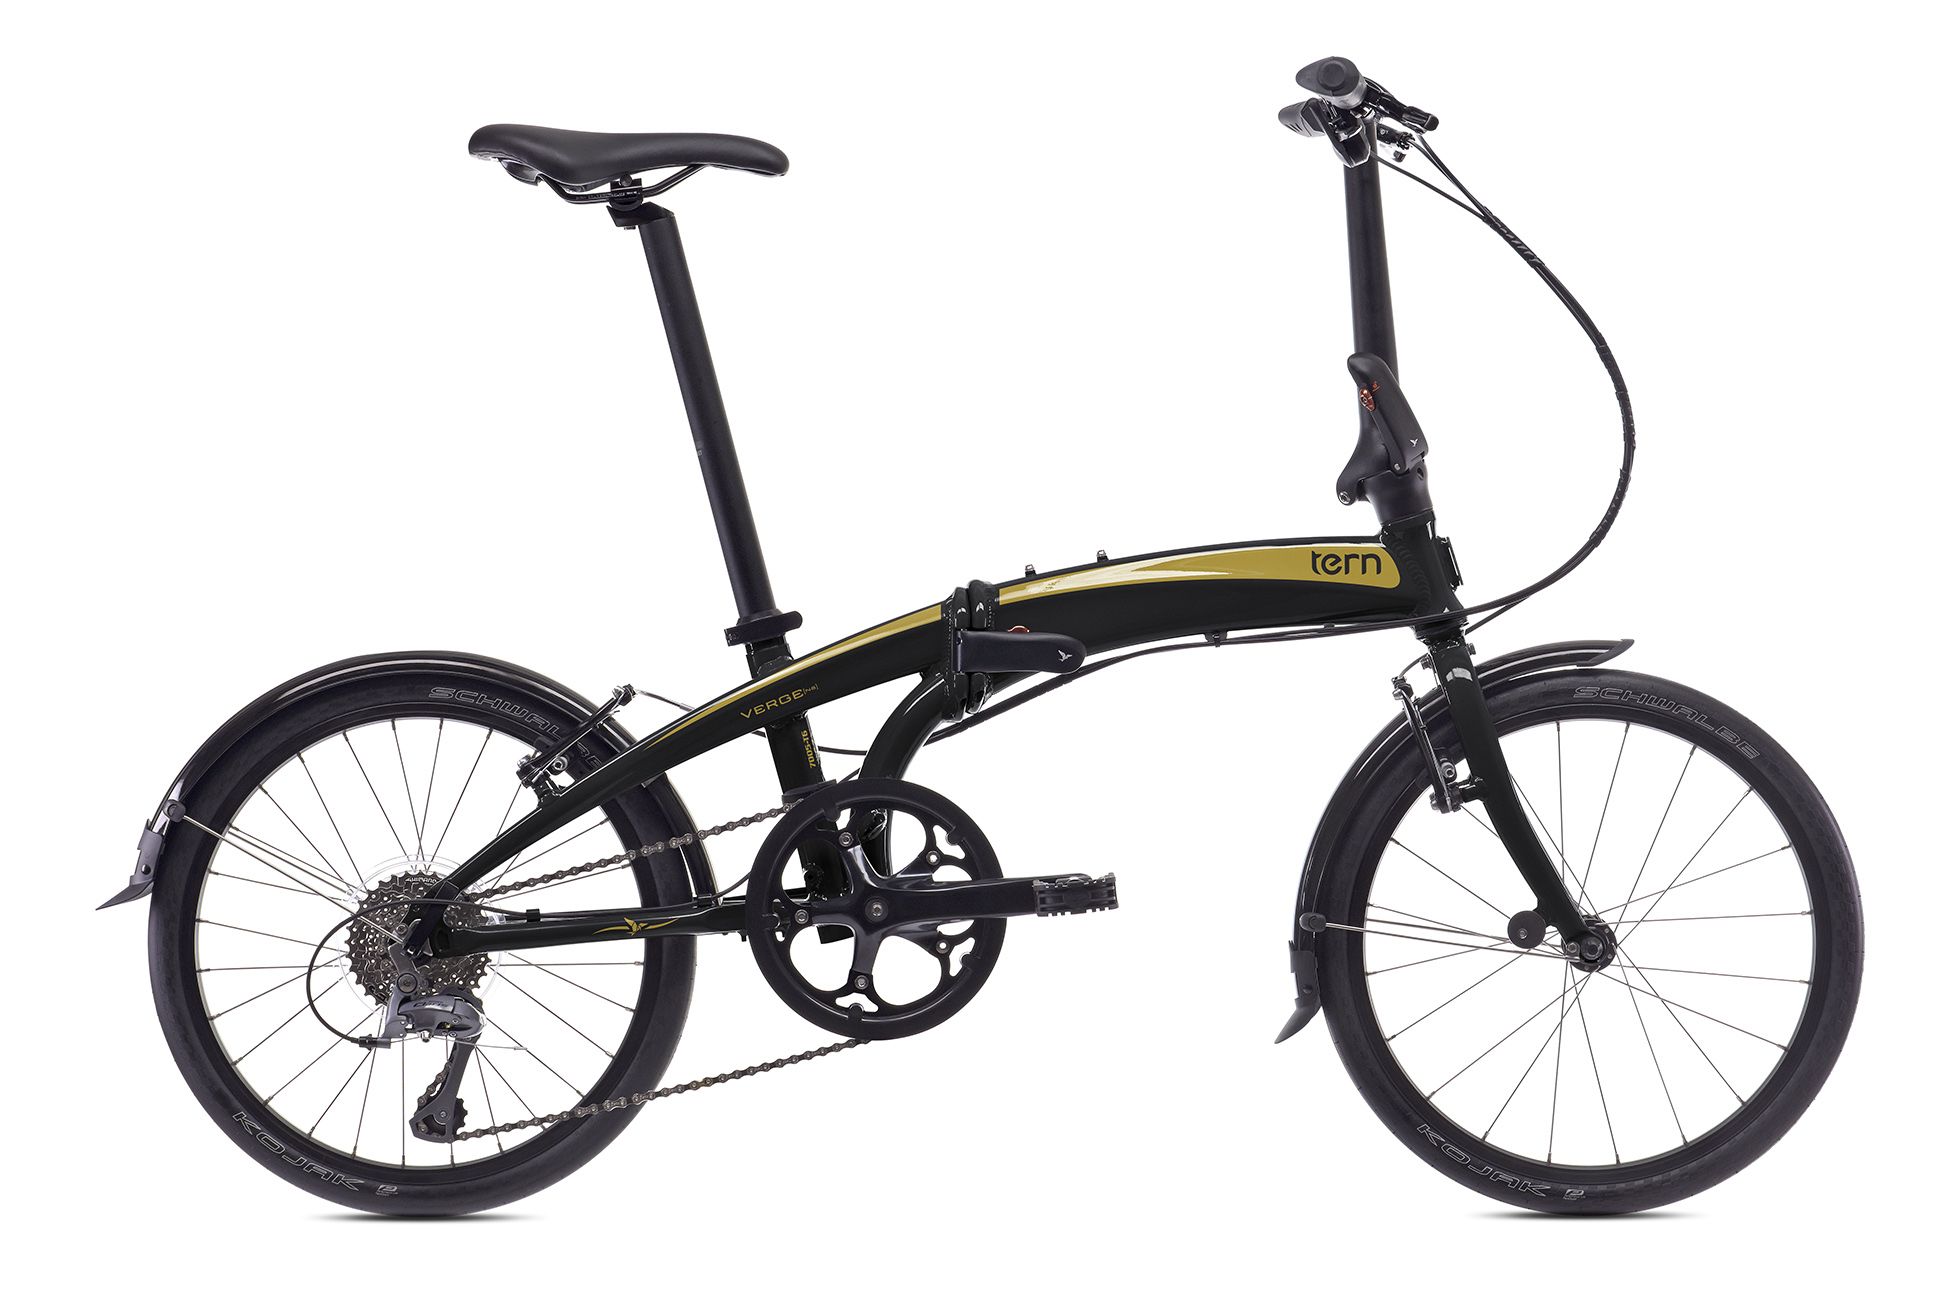  Велосипед Tern Verge N8 2016